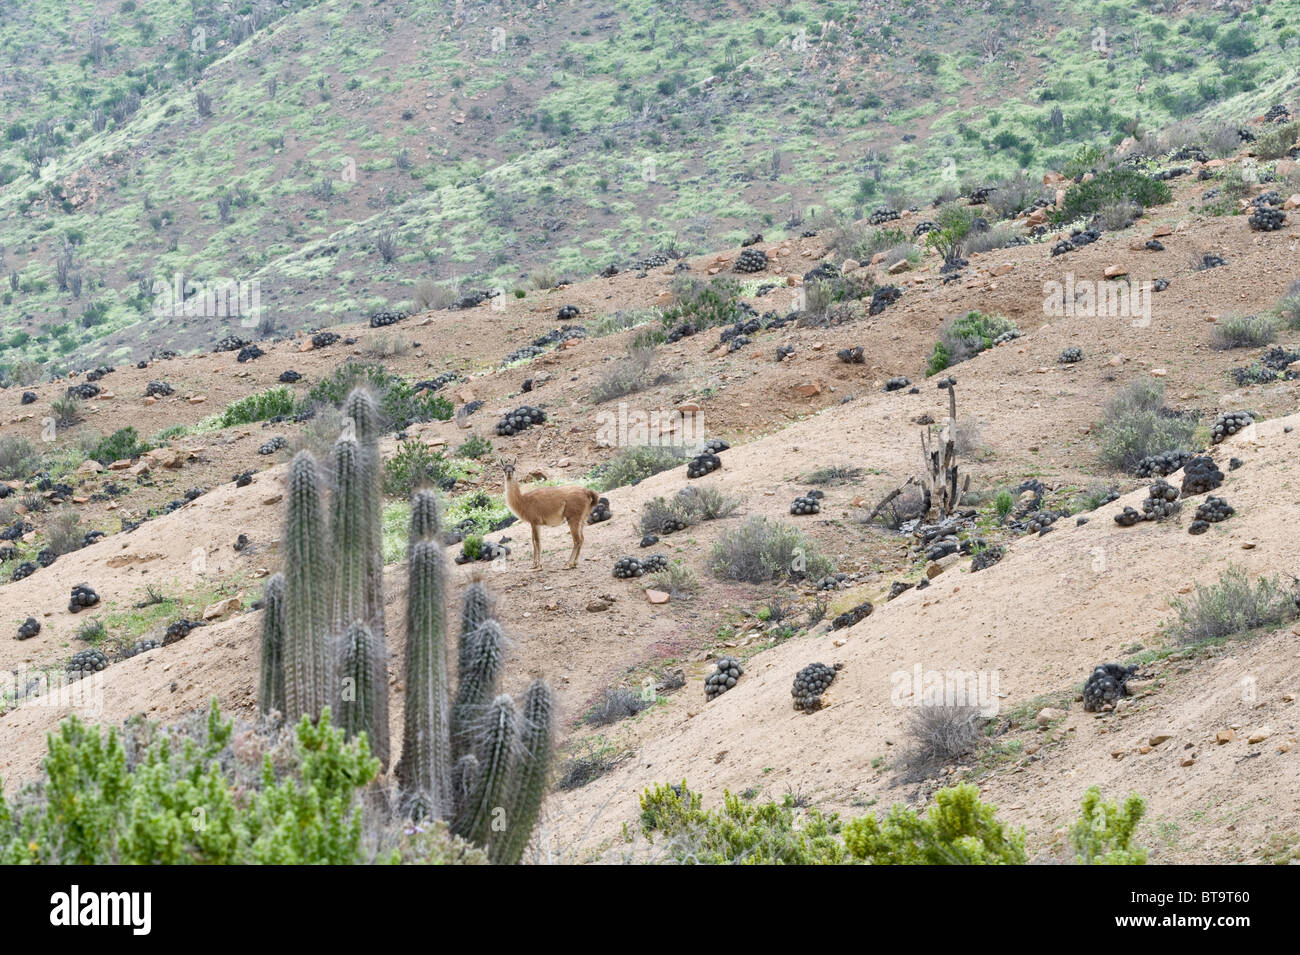 Guanaco (Lama guanicoe) male standing on plant covered slope Quebrada del Castillo Parque National Pan de Azucar Atacama Chile Stock Photo